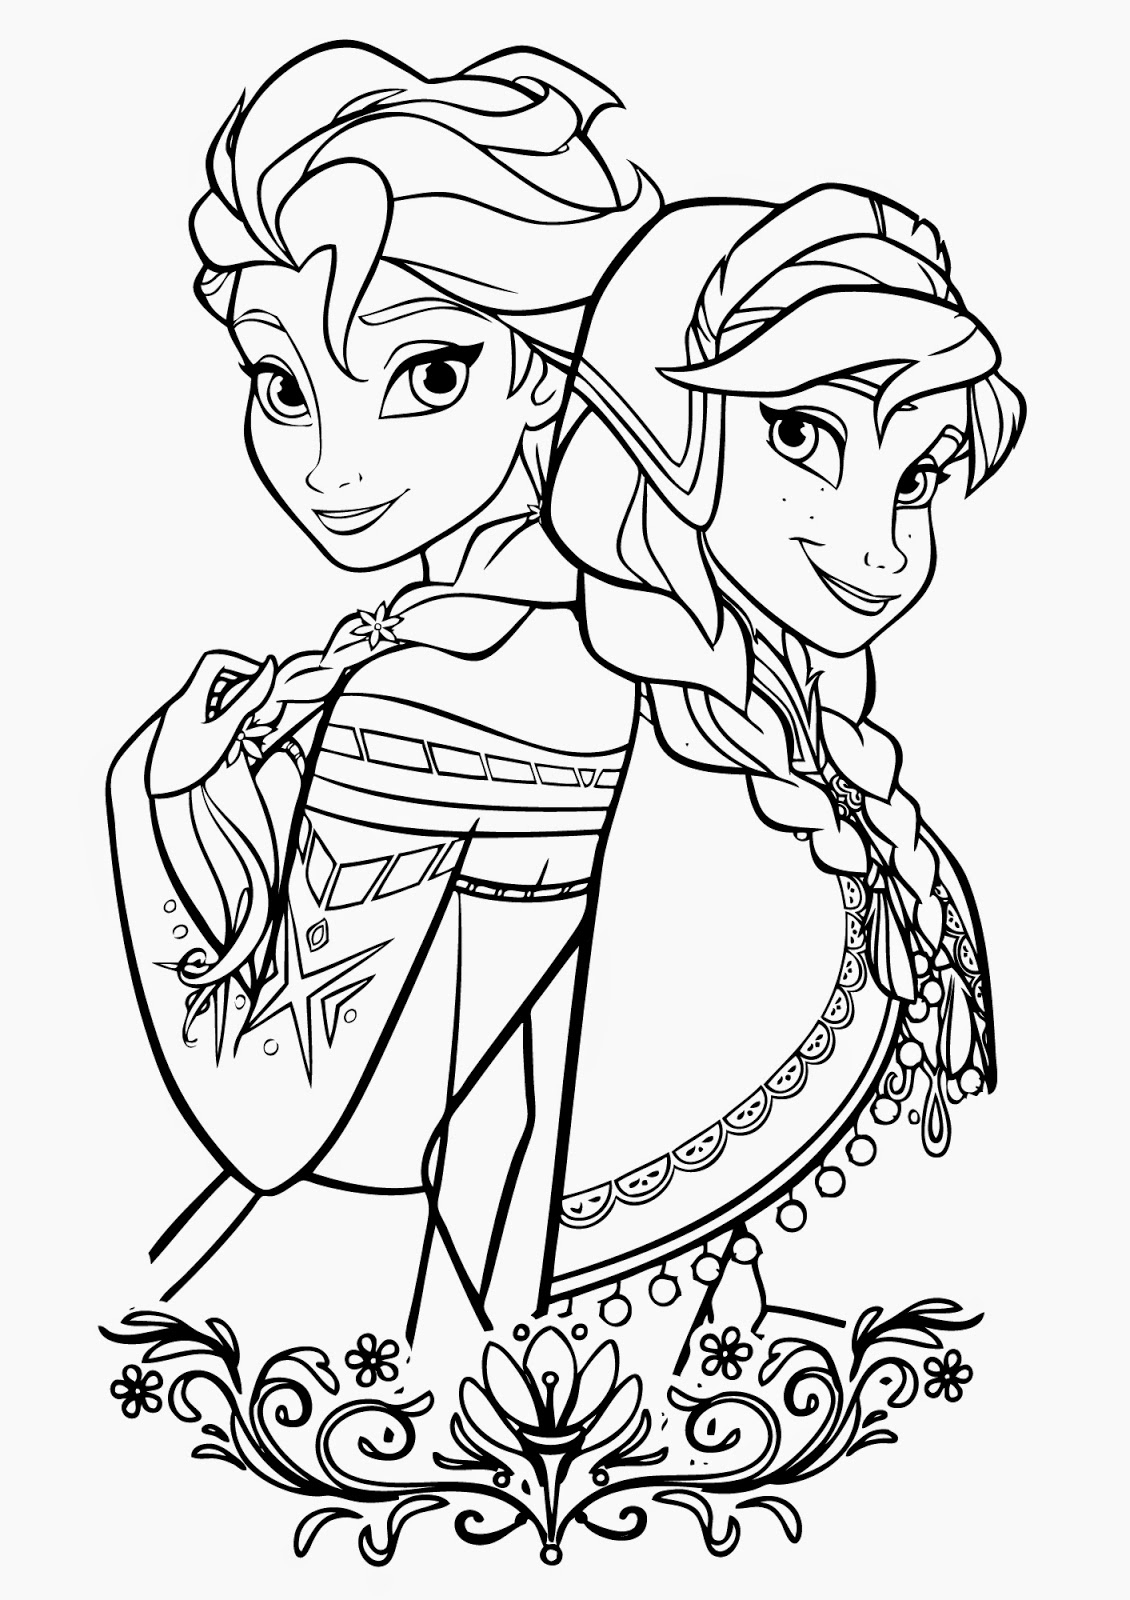 Princess Elsa And Anna Coloring Pages at Free